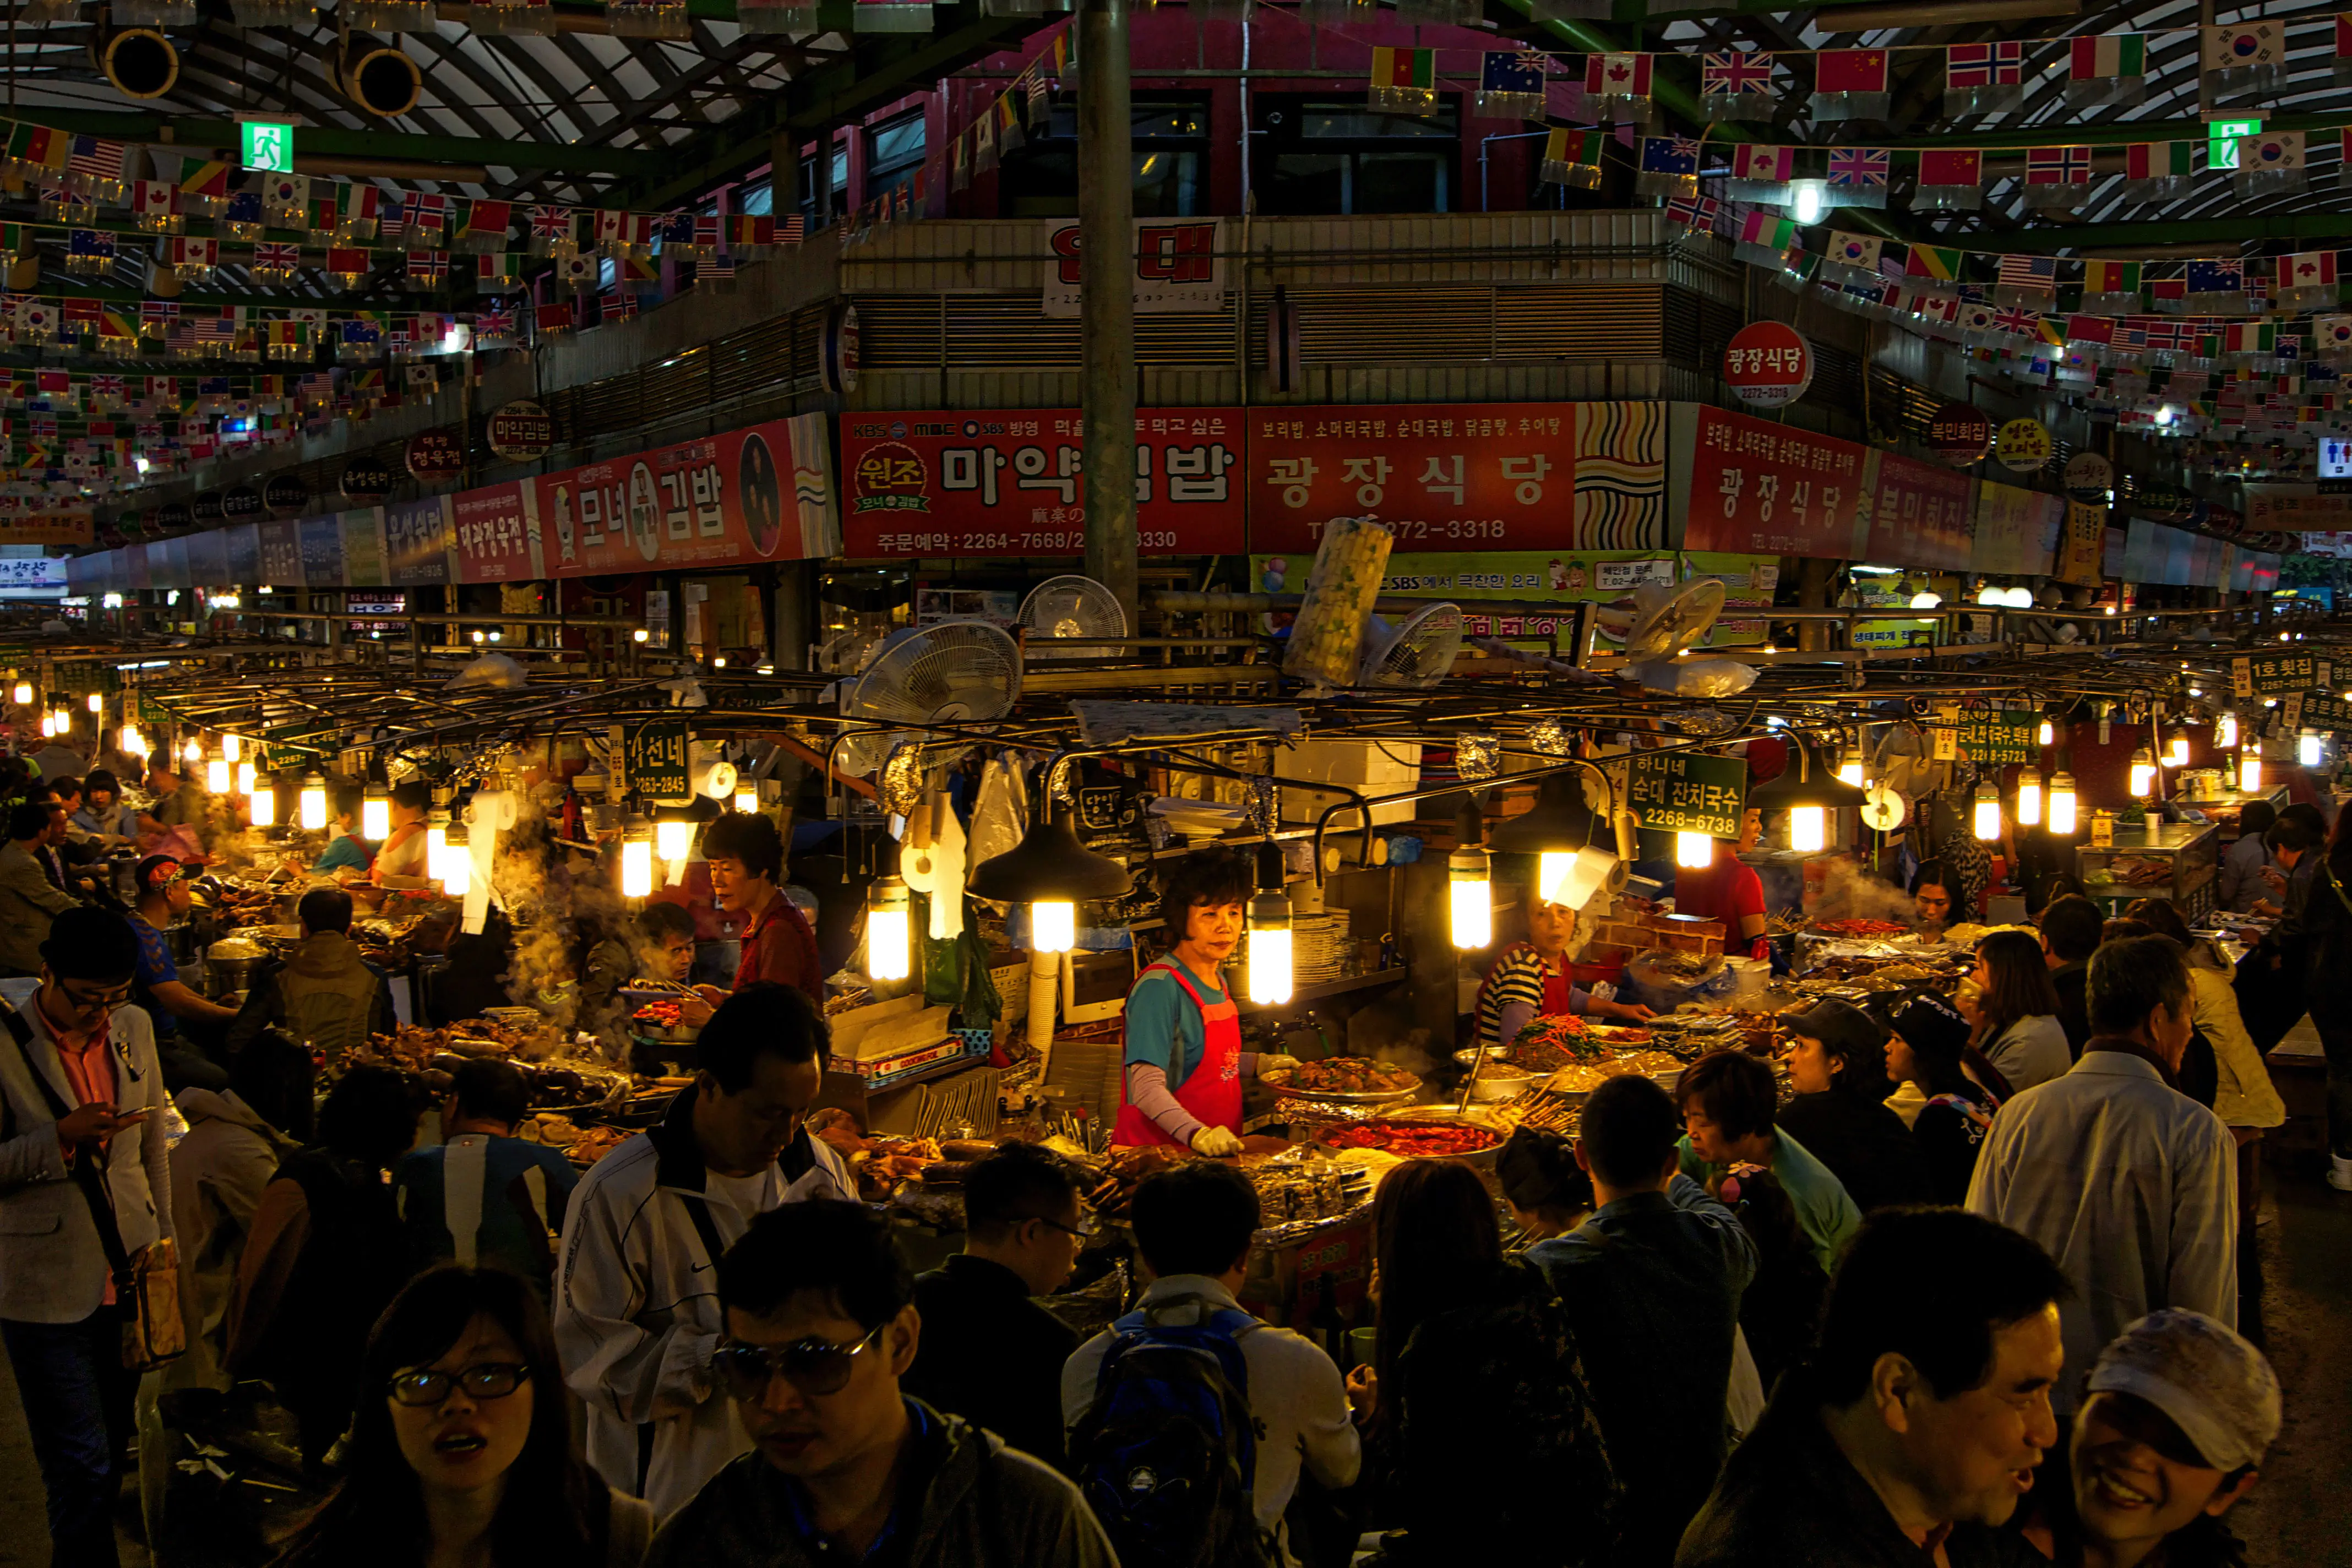 Gwangjang Market Seoul